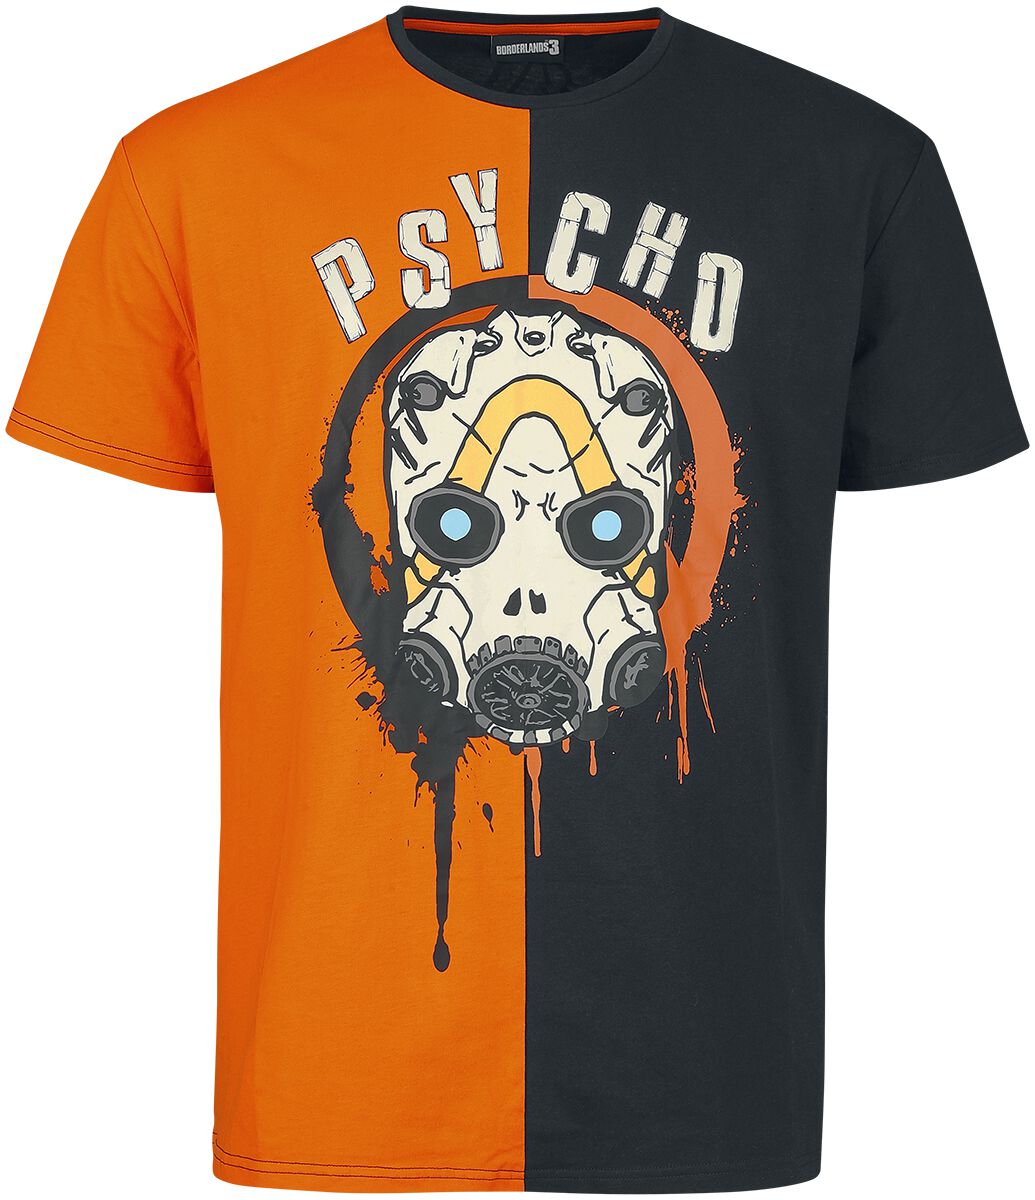 Borderlands - Gaming T-Shirt - Psycho - S bis M - für Männer - Größe M - schwarz/orange  - EMP exklusives Merchandise!